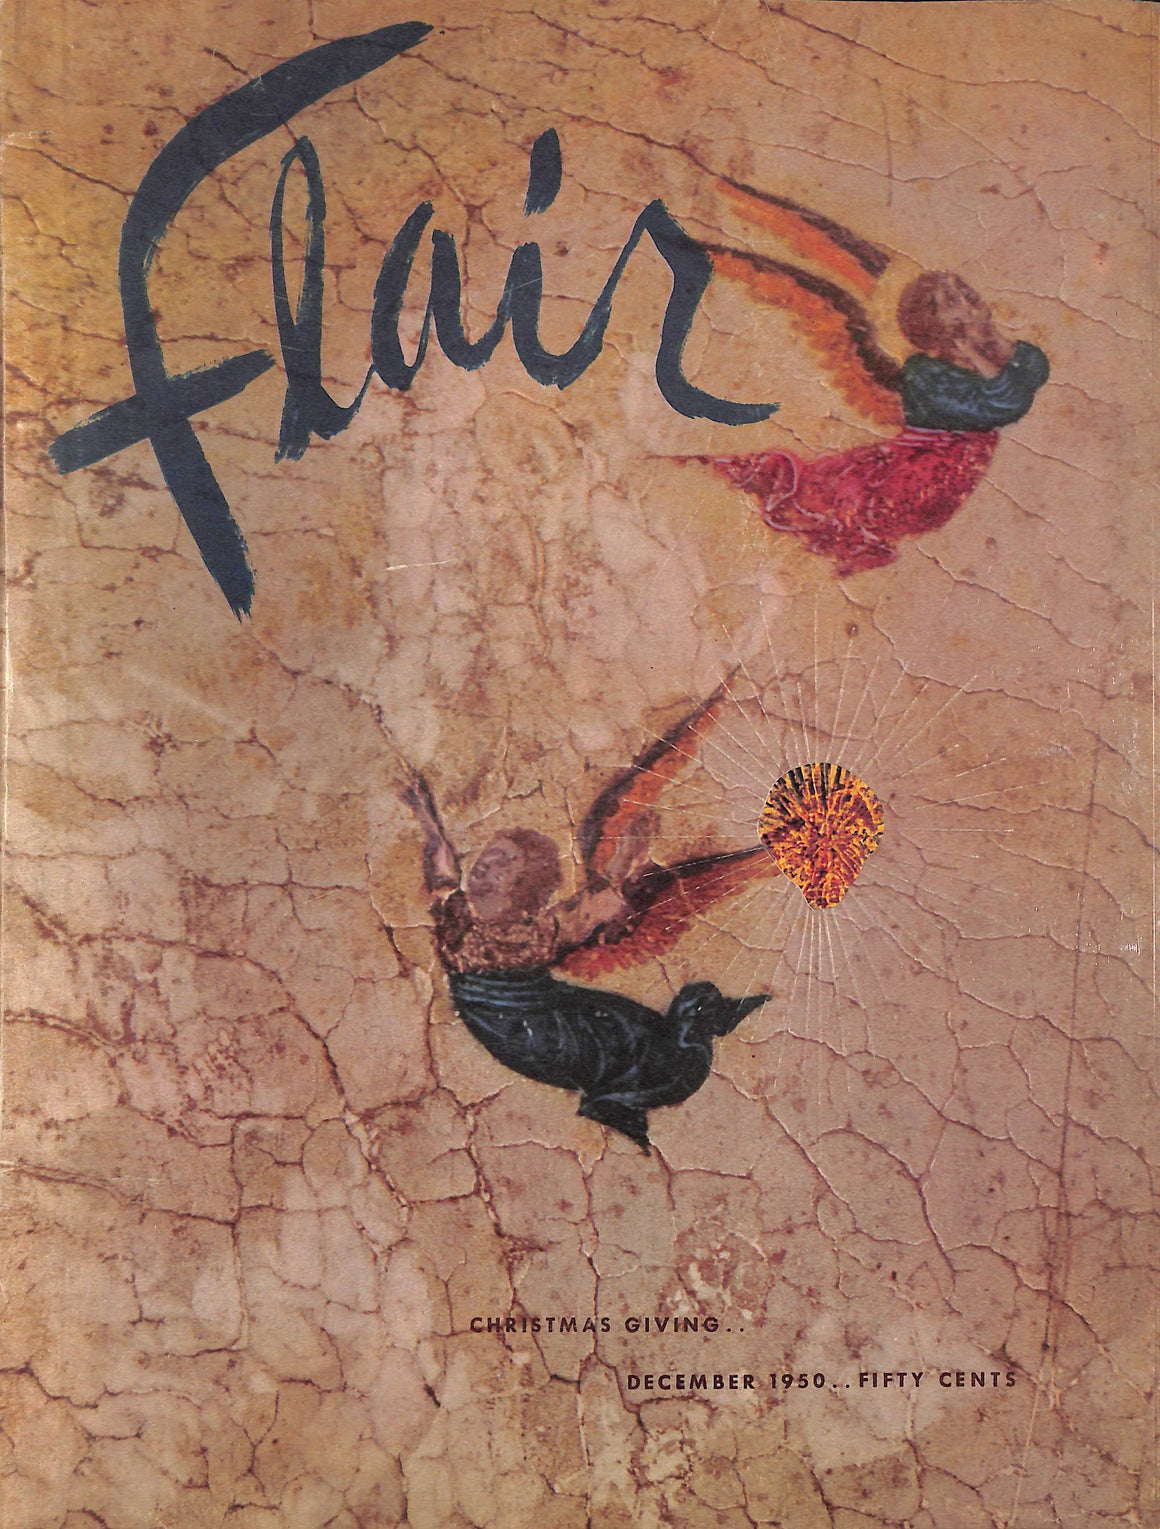 Flair No 11 December 1950